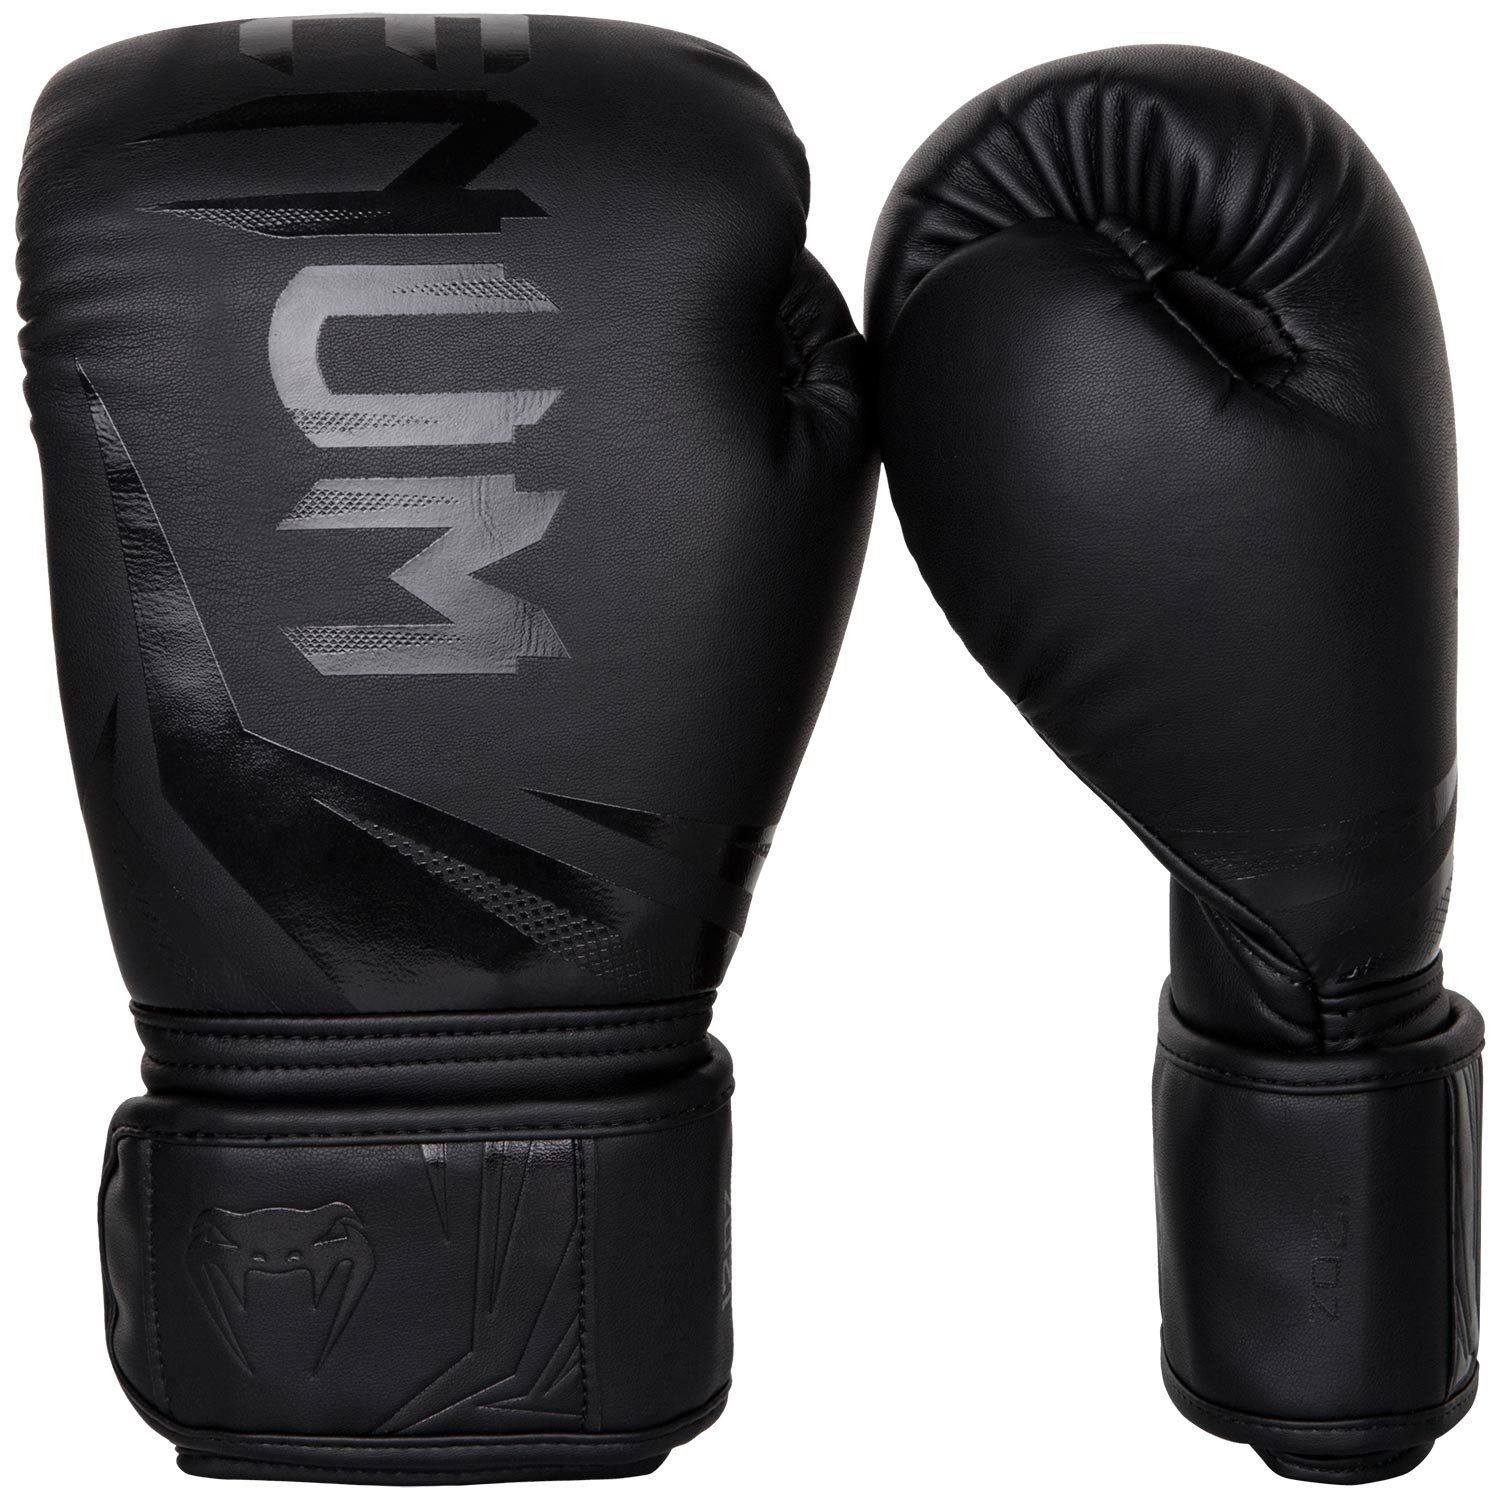 Boxerské rukavice Challenger 3.0 černé VENUM vel. 14 oz